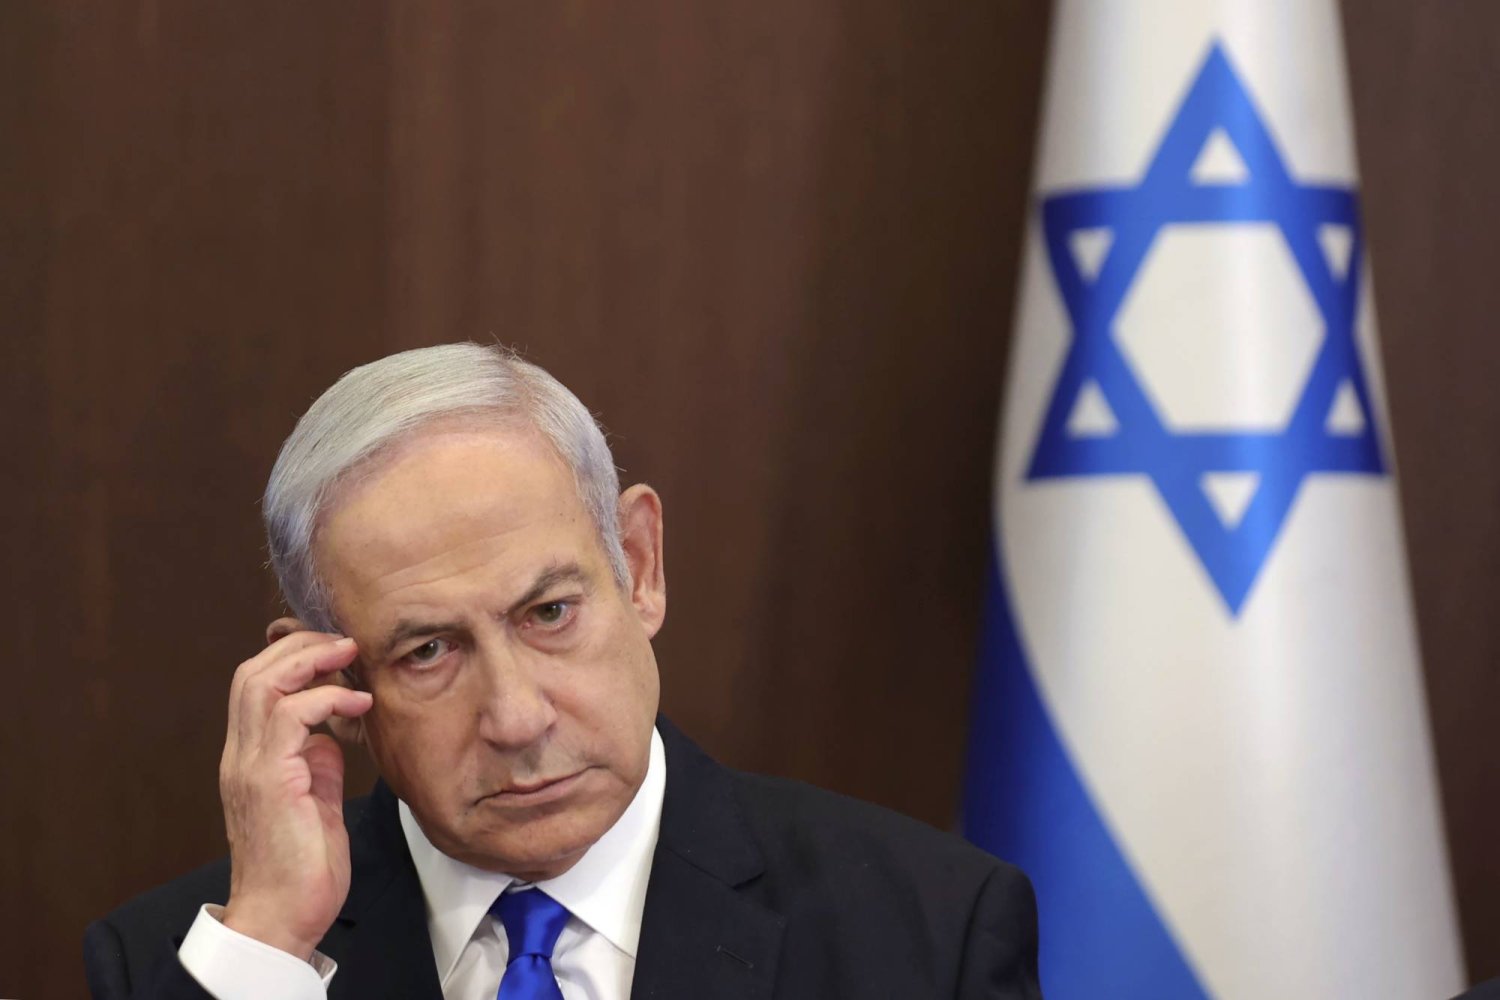 فايننشال تايمز: "إسرائيل" بحاجة لقيادة مسؤولة ونتنياهو ليس الحل